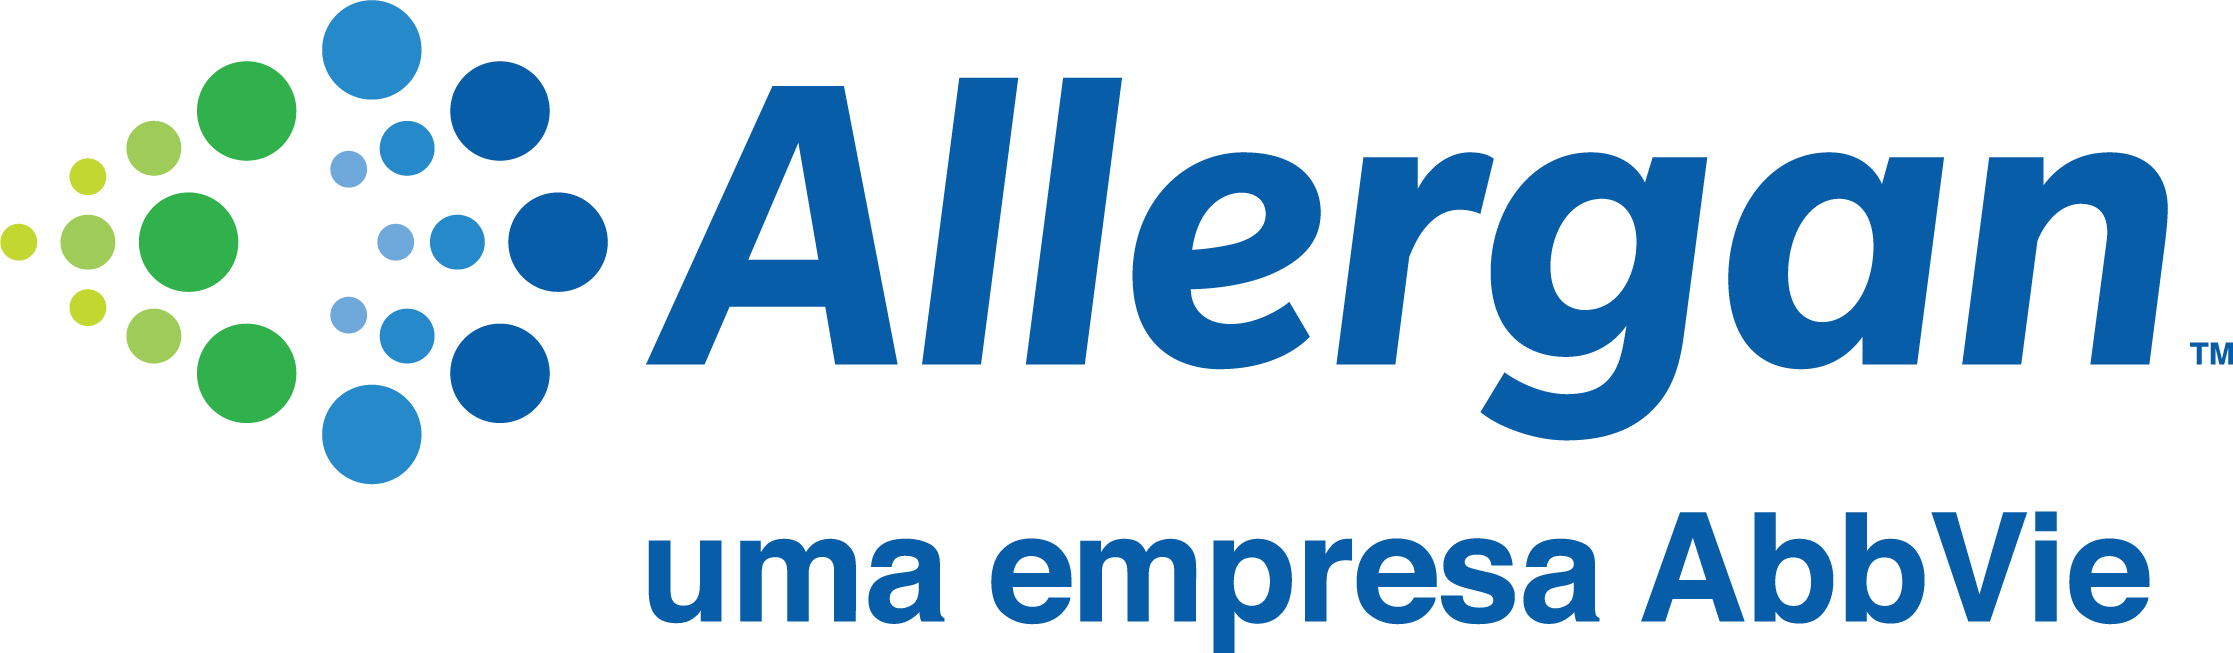 Logo_Allergan_Abbvie